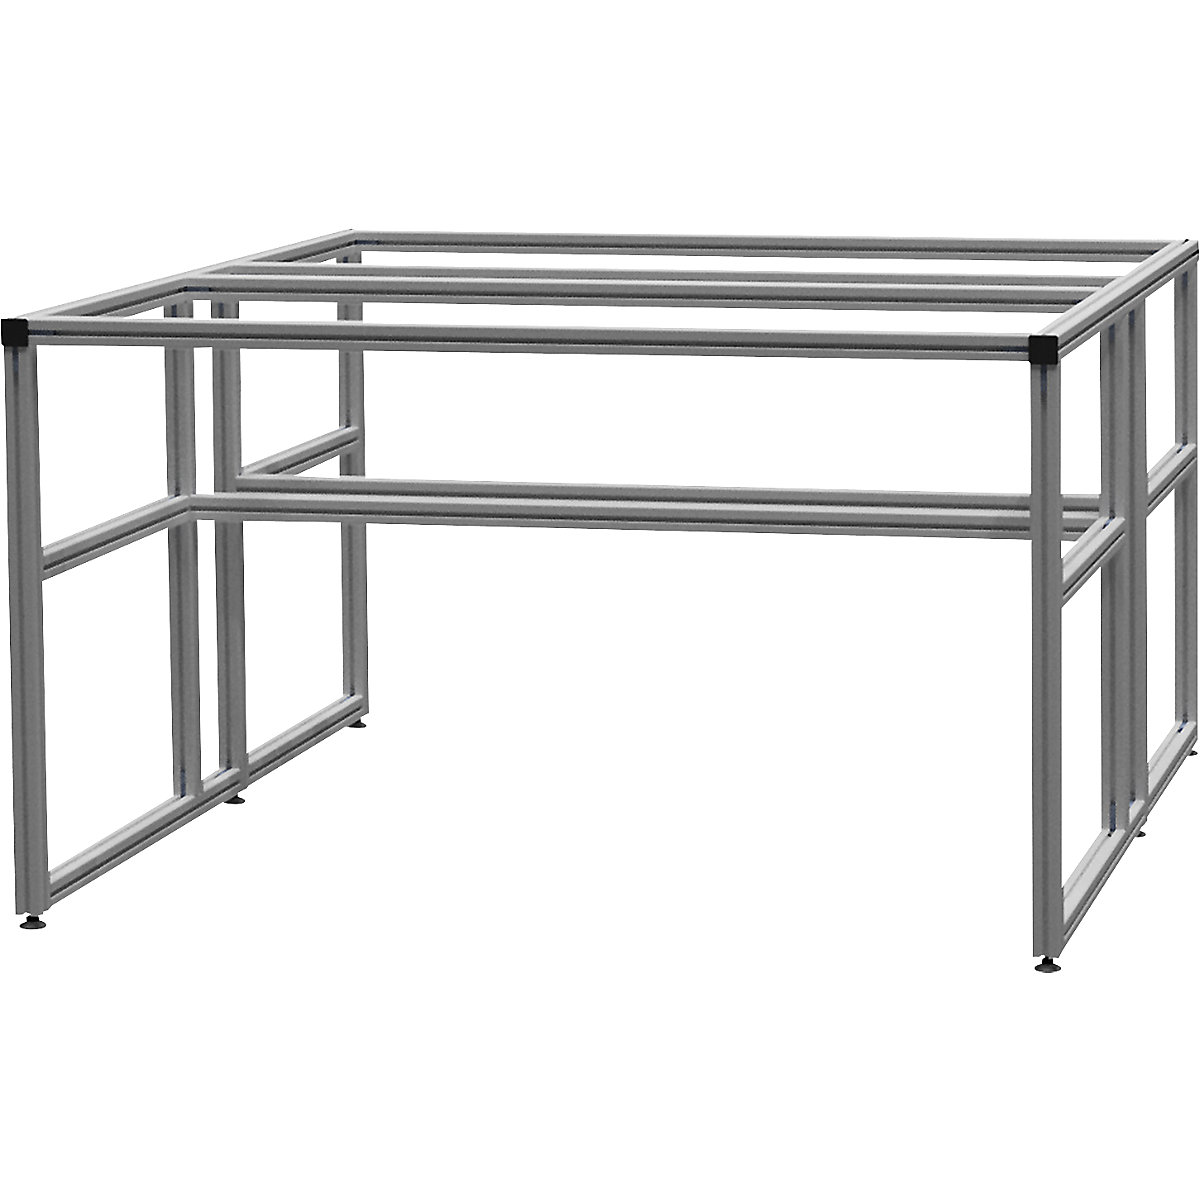 Stół warsztatowy aluminiowy workalu®, szkielet podstawowy dwustronny – bedrunka hirth